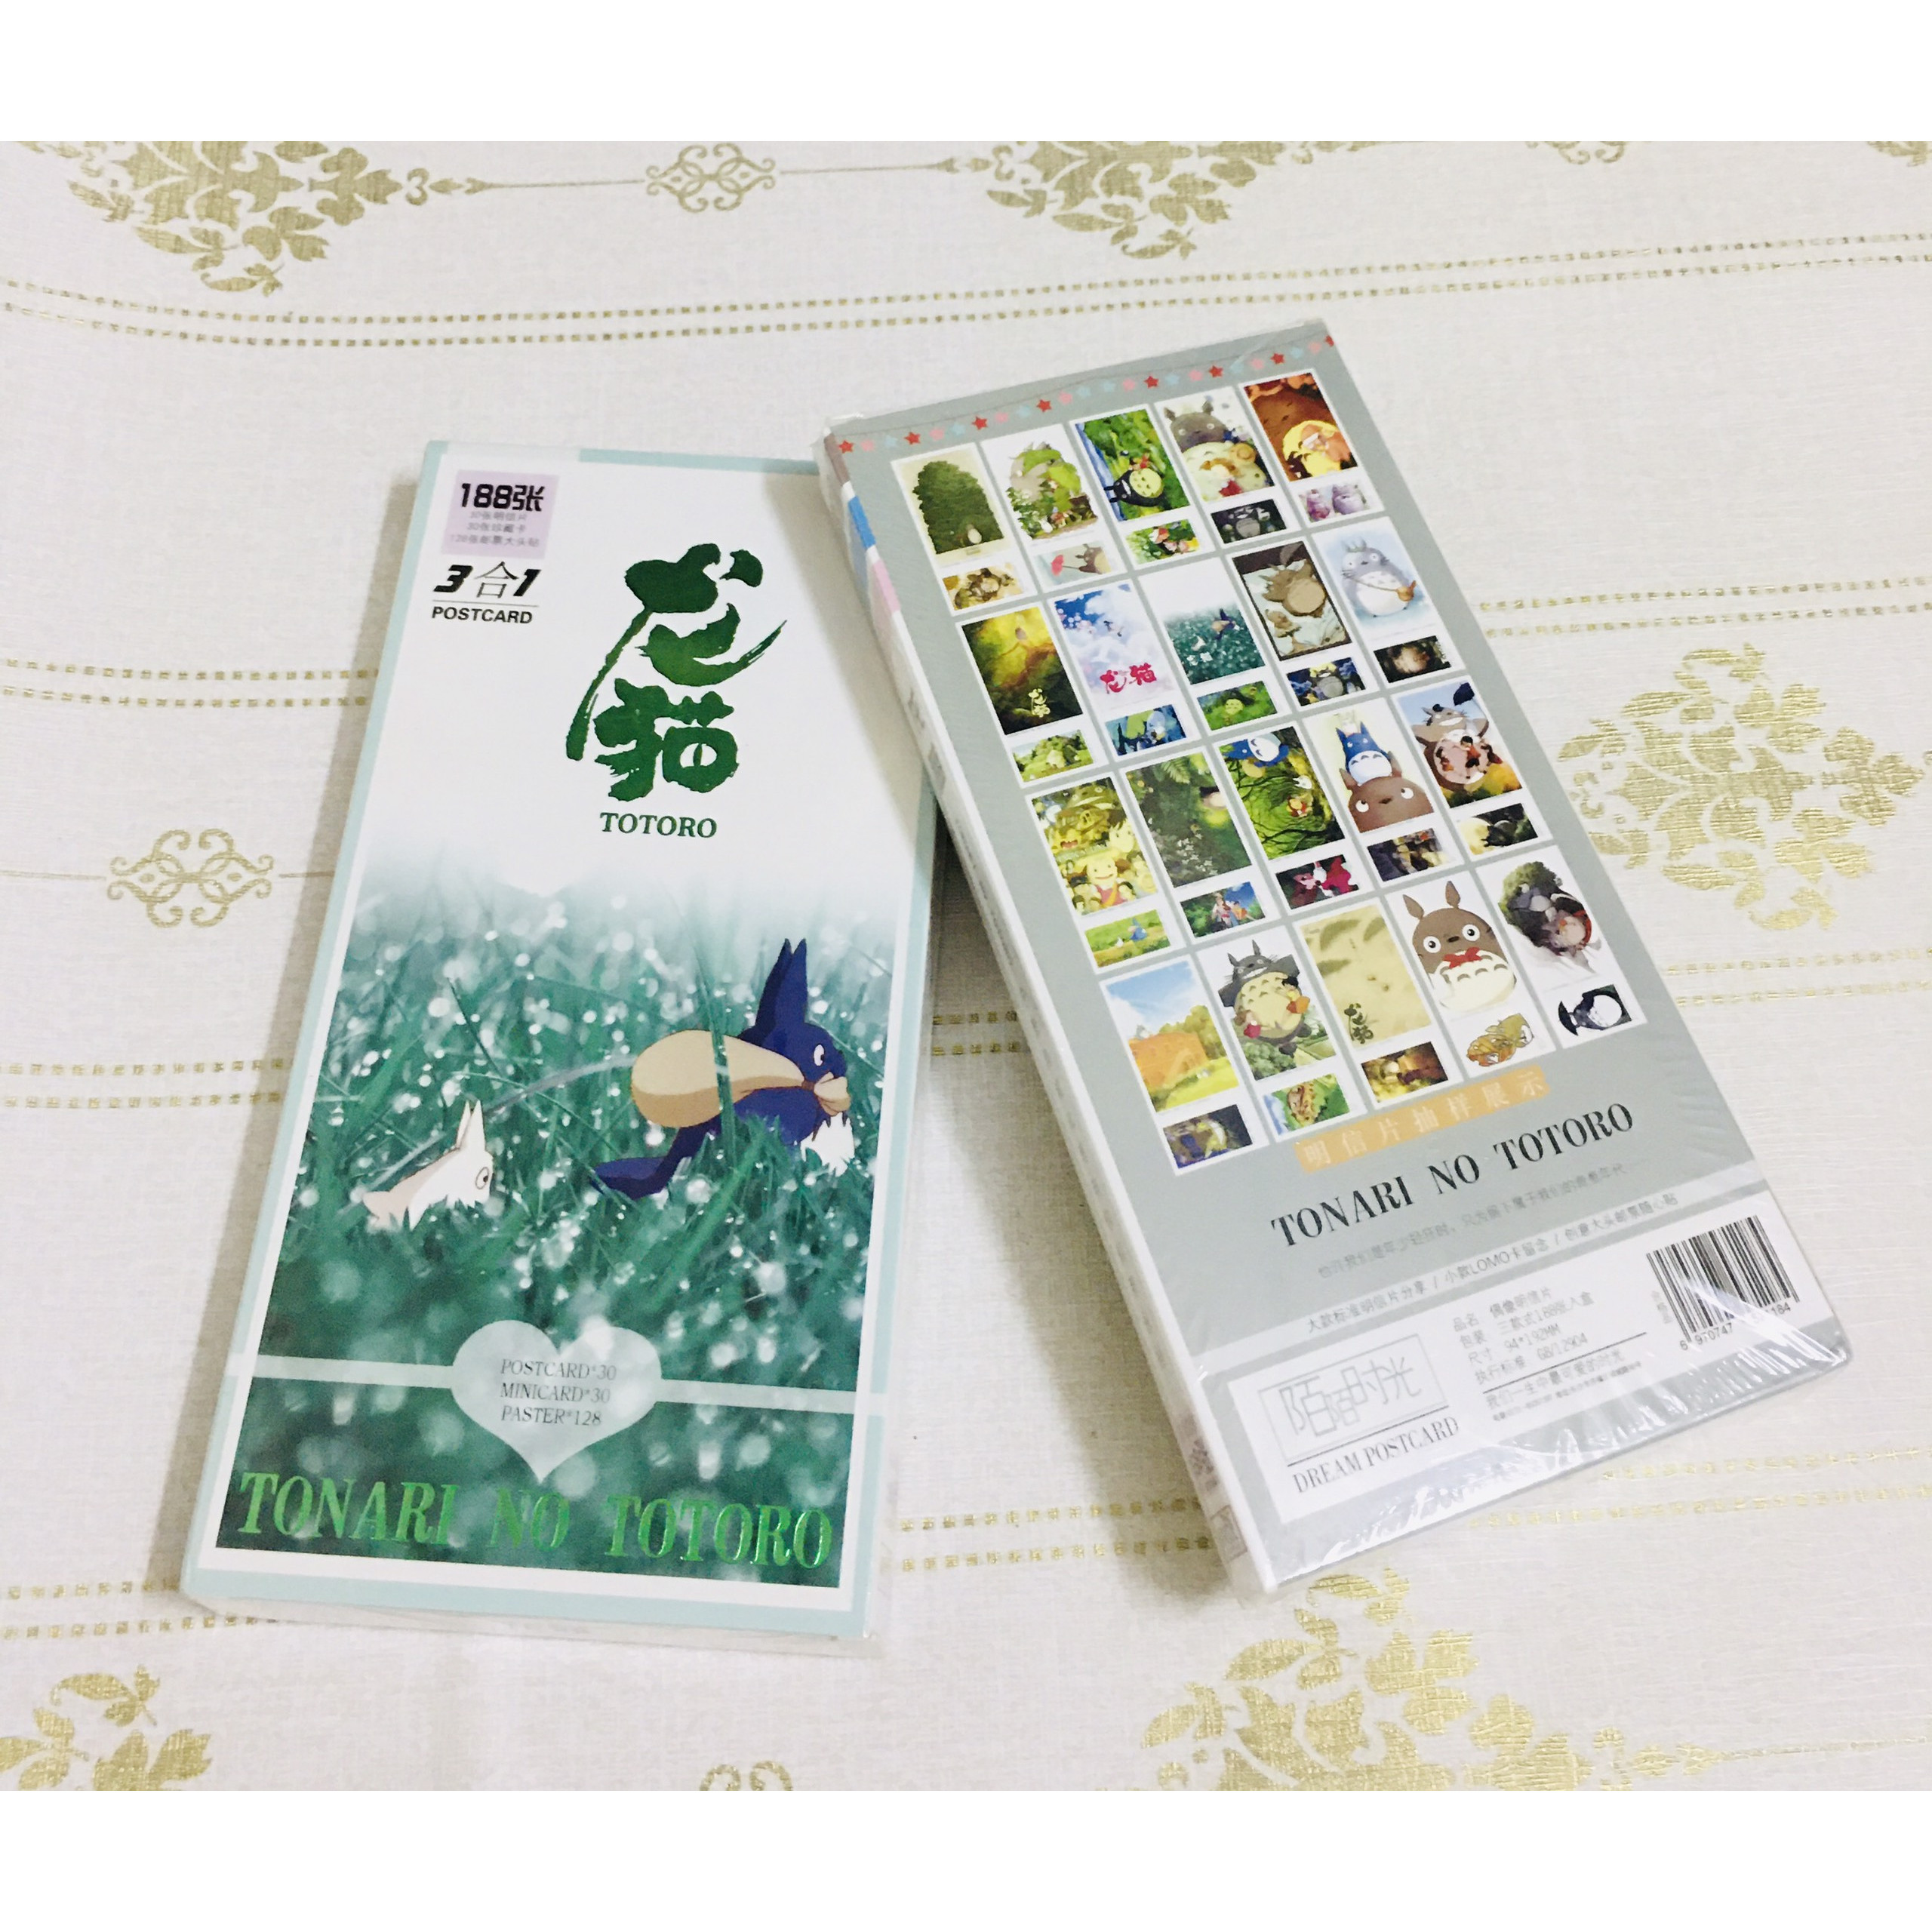 Postcard Totoro hộp ảnh 188 tấm to nhỏ ( giao mẫu ngẫu nhiên )